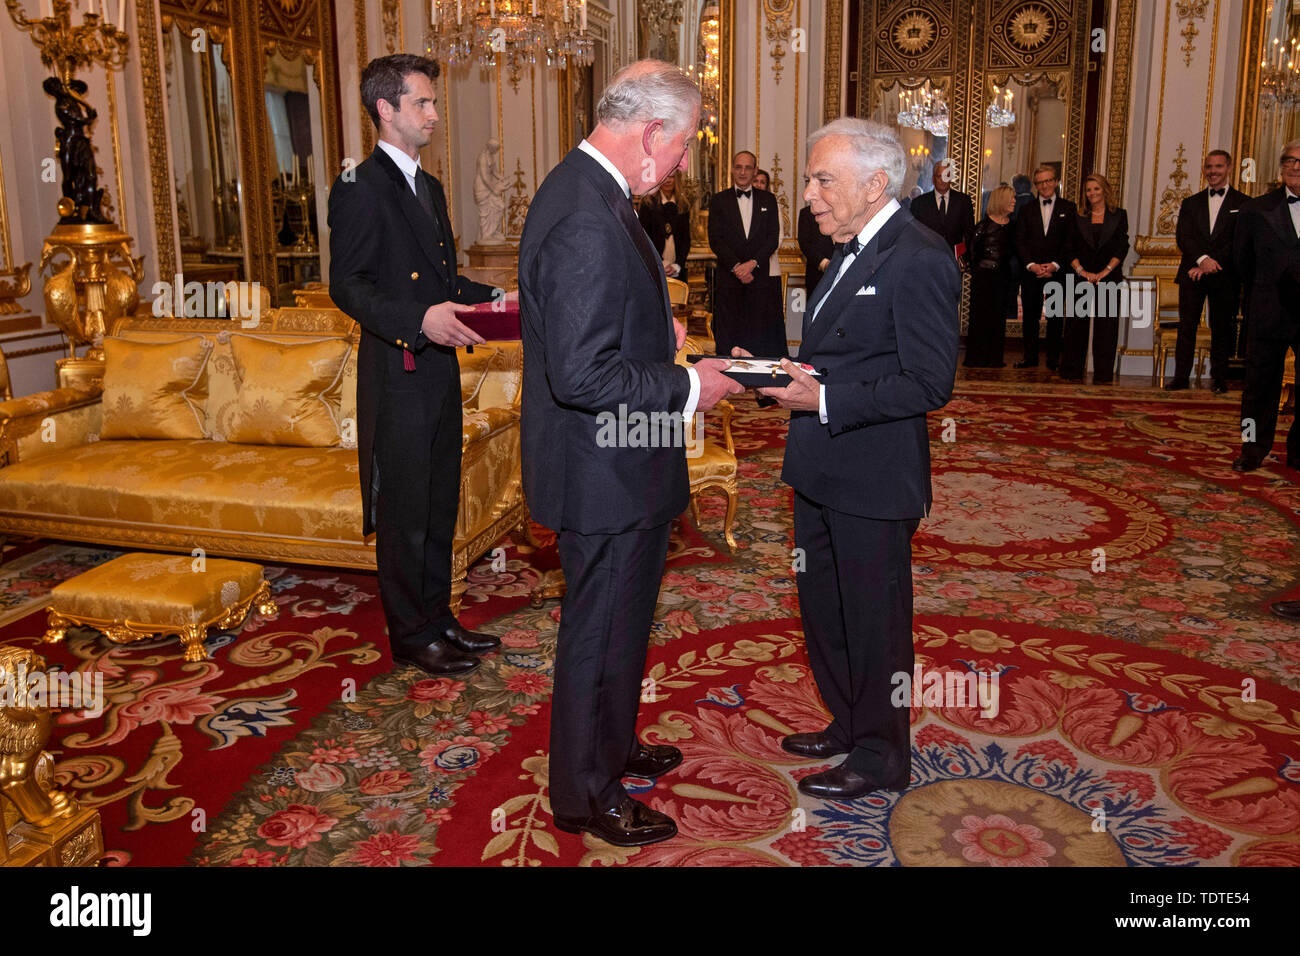 El Príncipe de Gales presenta diseñador Ralph Lauren con su honorario KBE (Caballero Comandante de la Orden del Imperio Británico) por servicios prestados a la moda en una ceremonia privada en el Palacio de Buckingham. Foto de stock